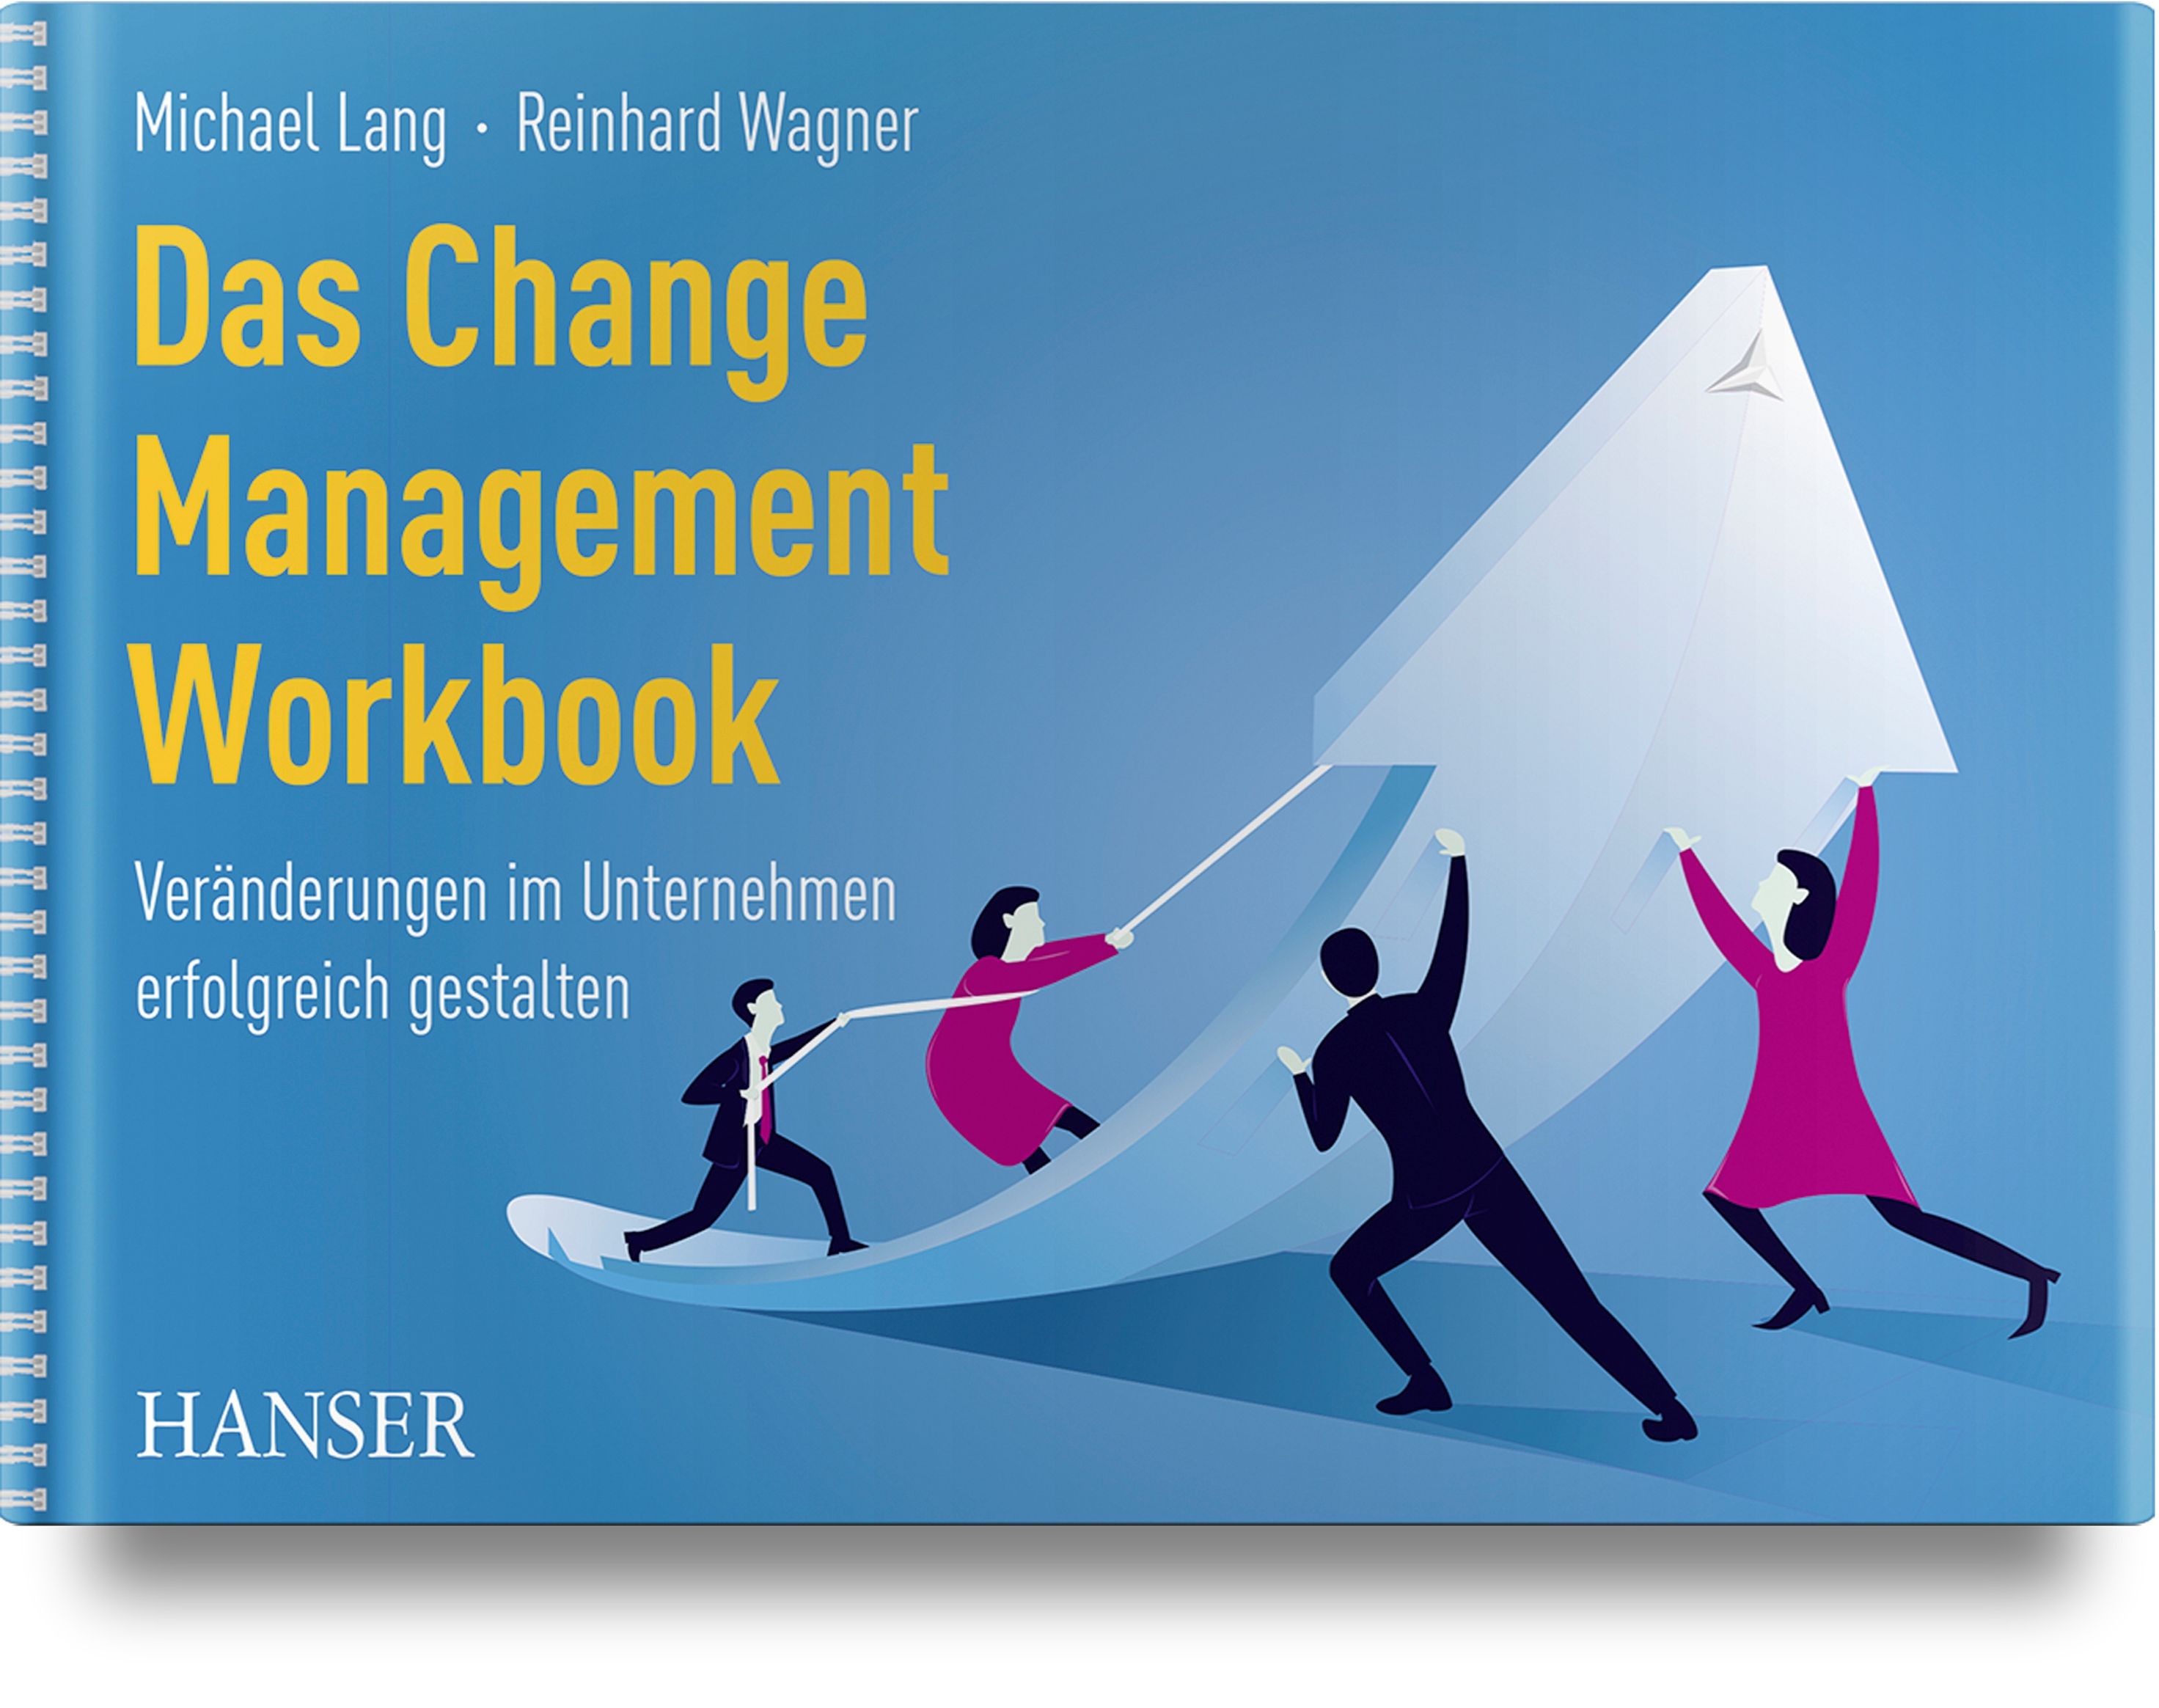 Change Management Workbook, Change Management, Veränderung ist unausweichlich!